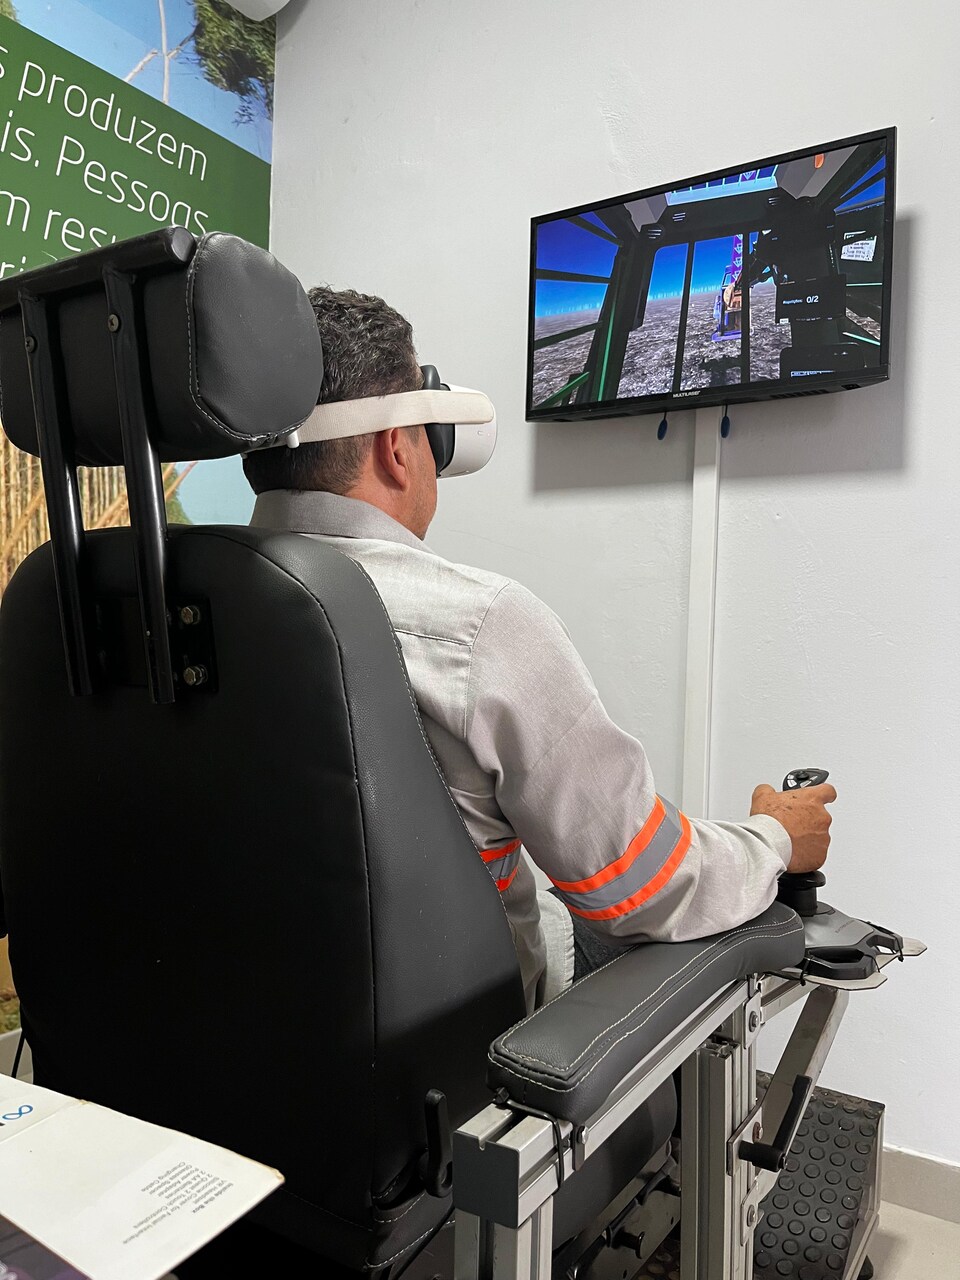 Realidade virtual triplica capacidade de treinamento e aumenta segurança no campo - Revista Cipa